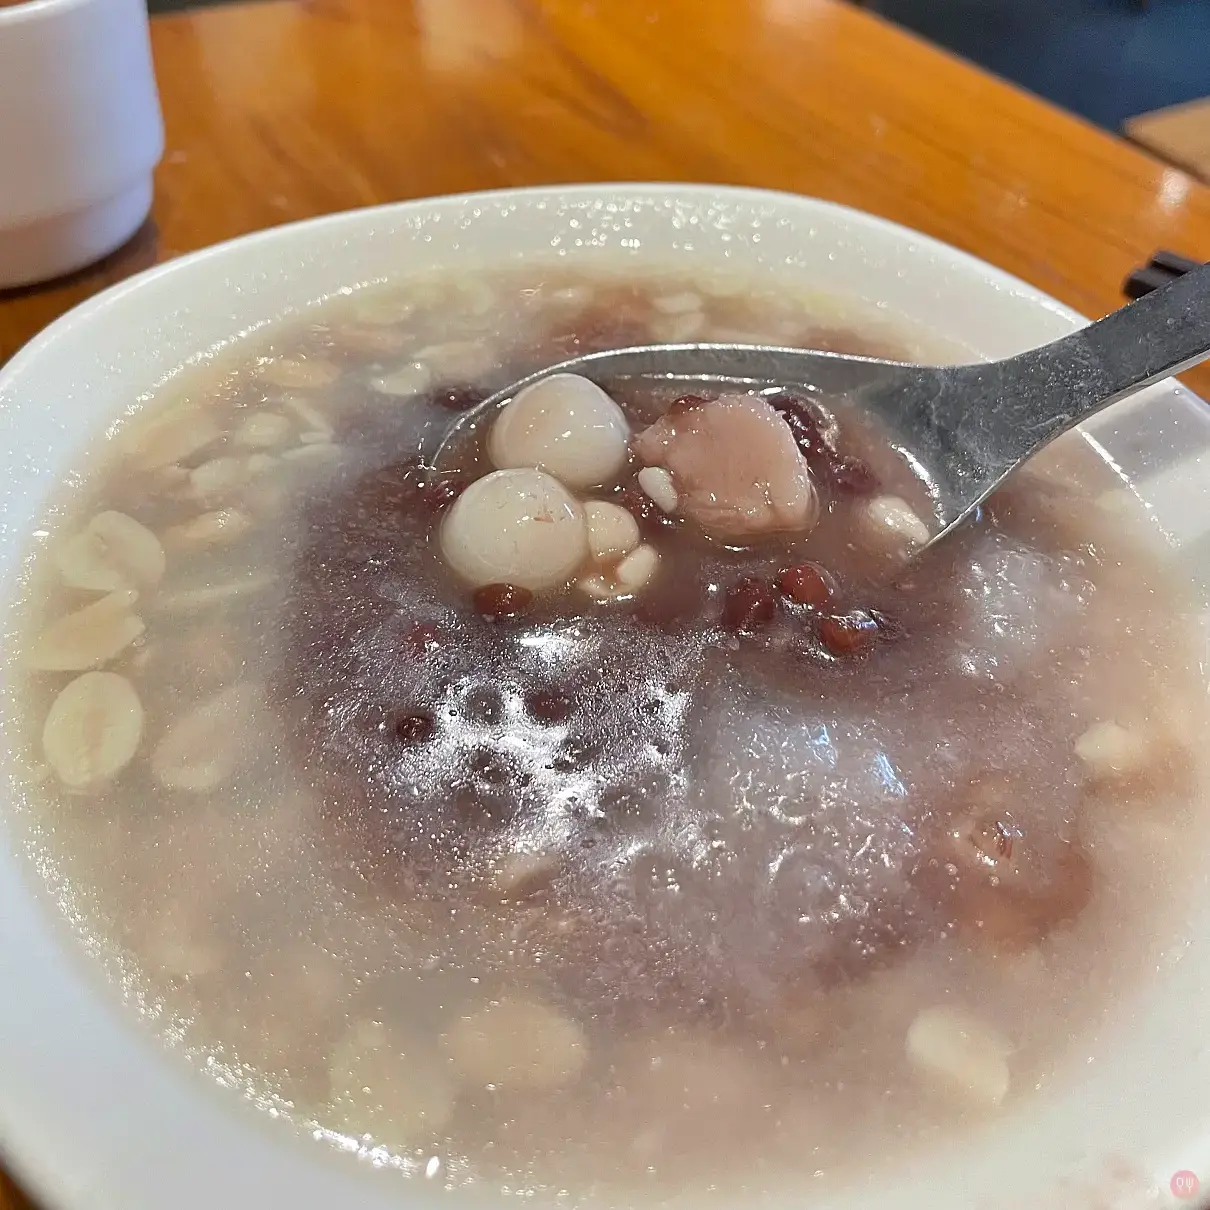 [食記] 台北中山 雙連圓仔湯 傳統老店大改造 菜單